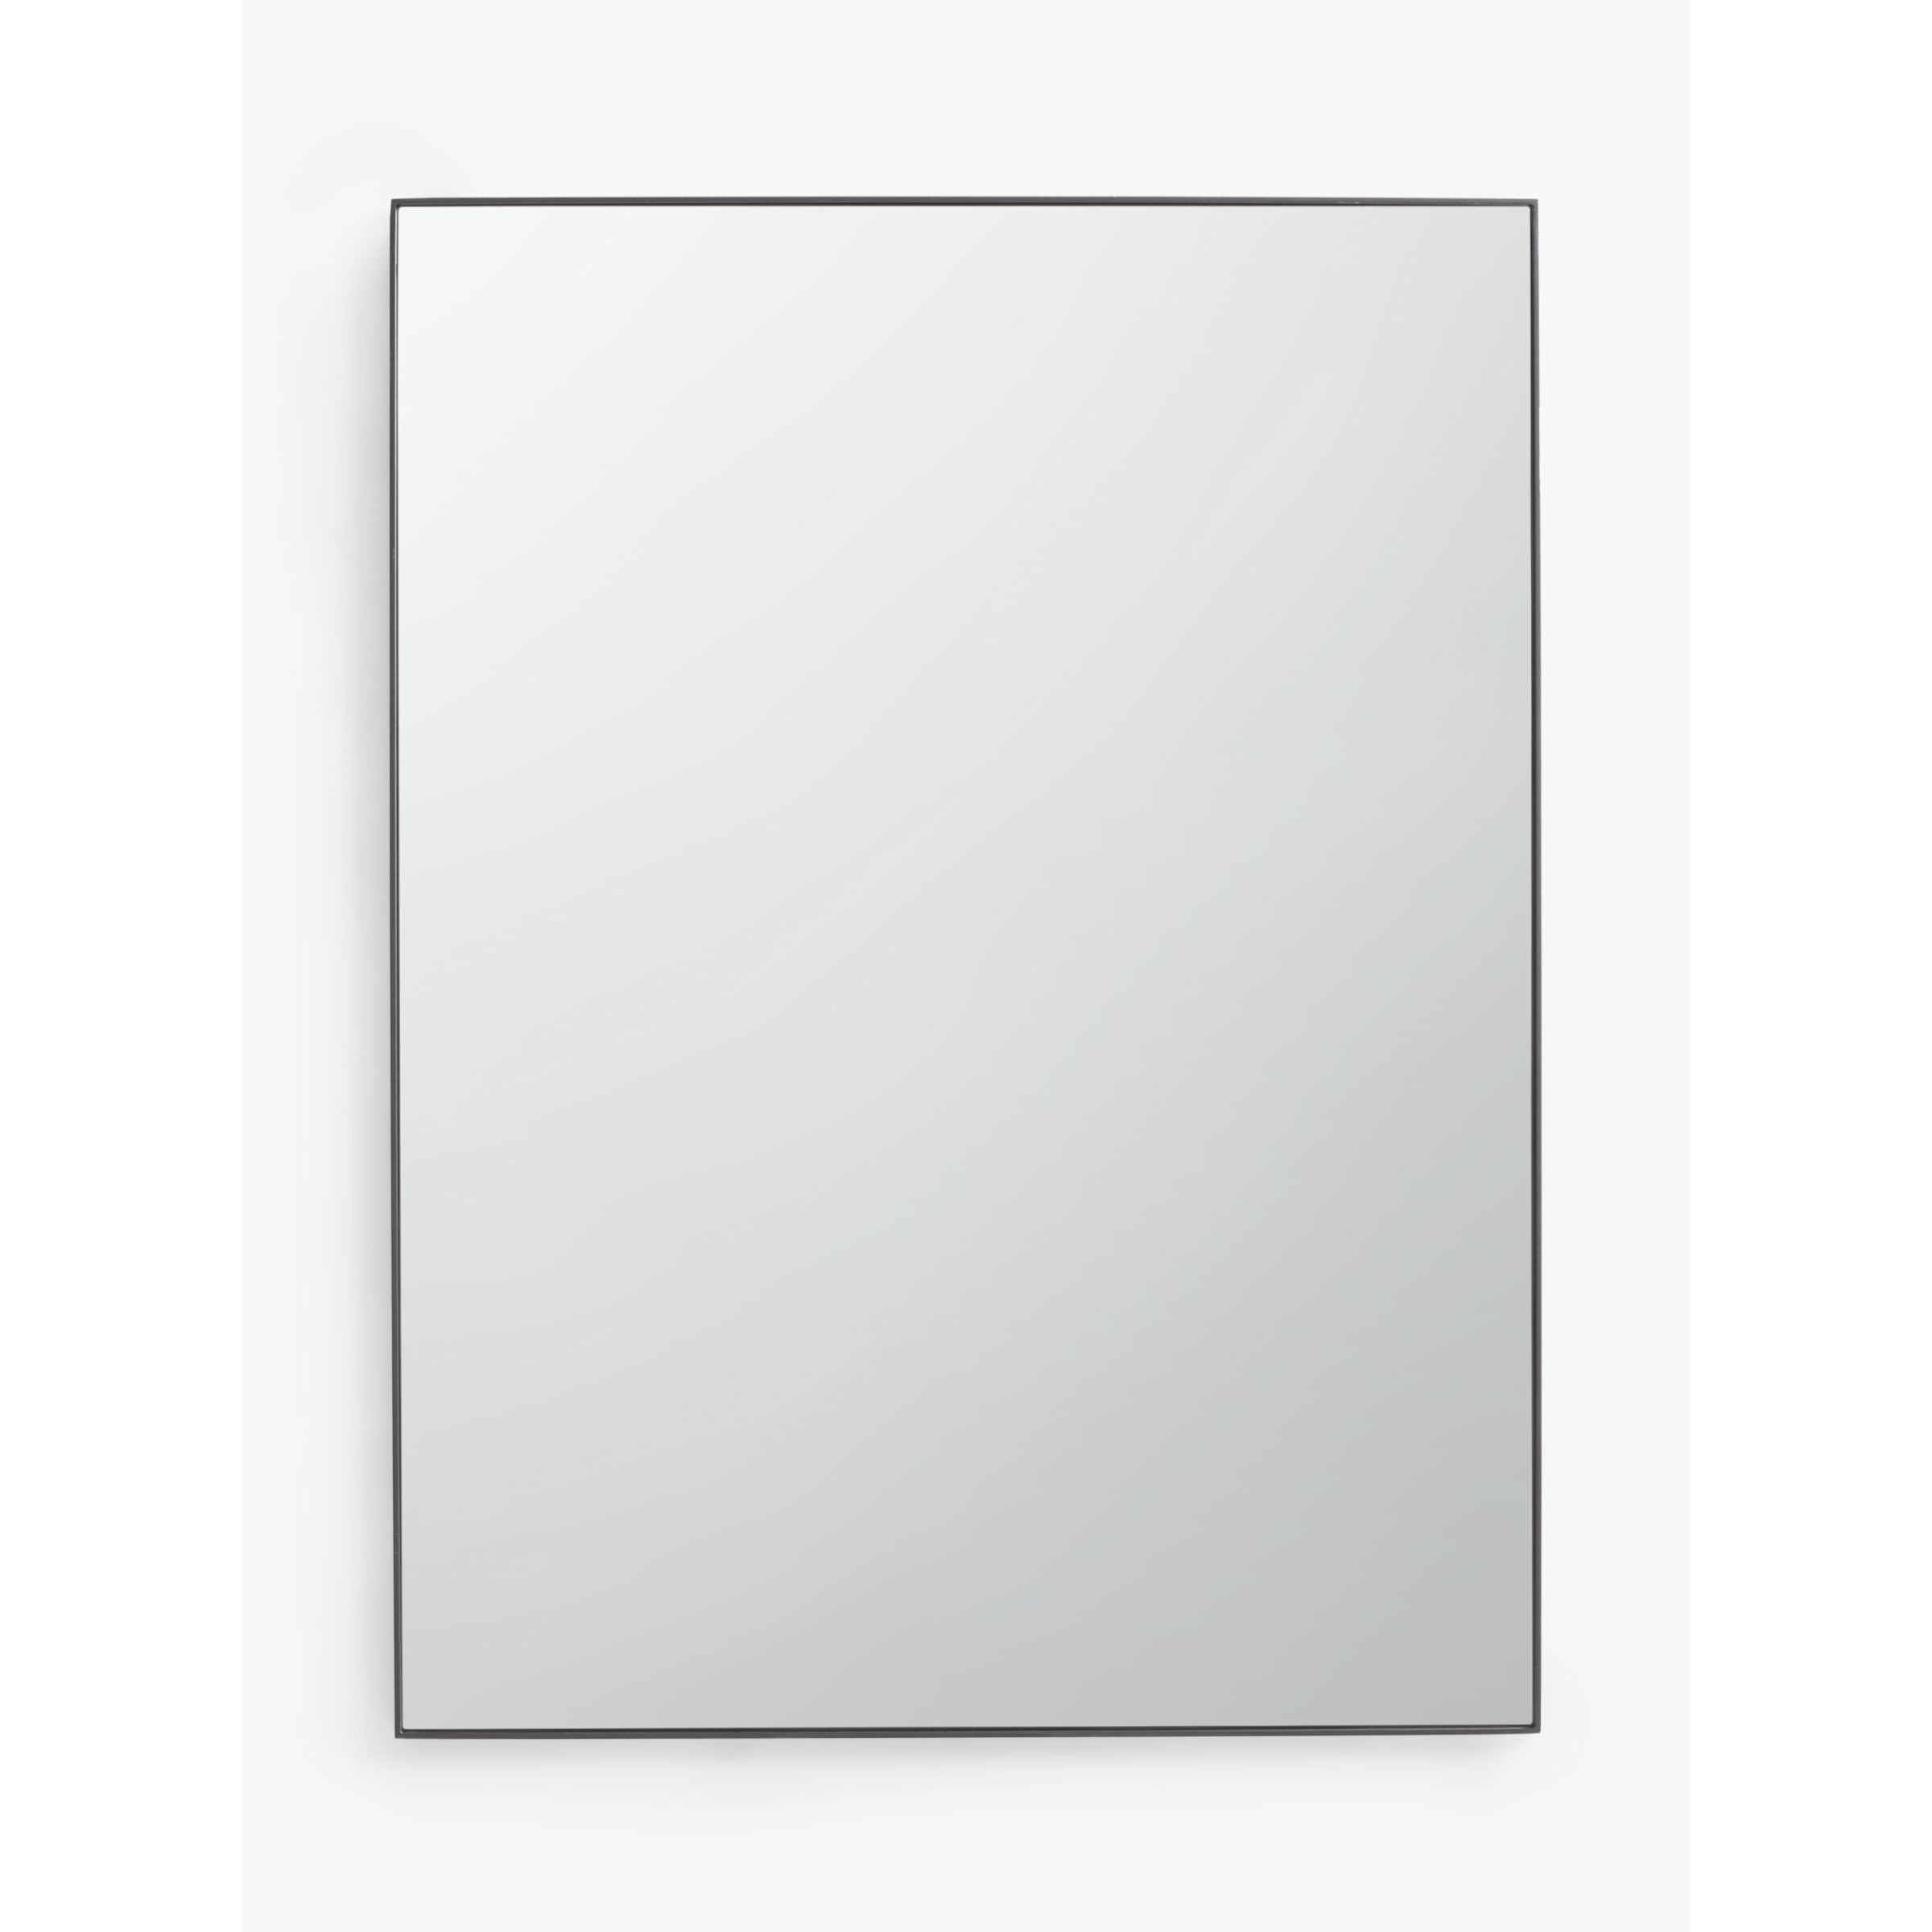 John Lewis Scandi Metal Rectangular Mirror, 102 x 76cm - image 1